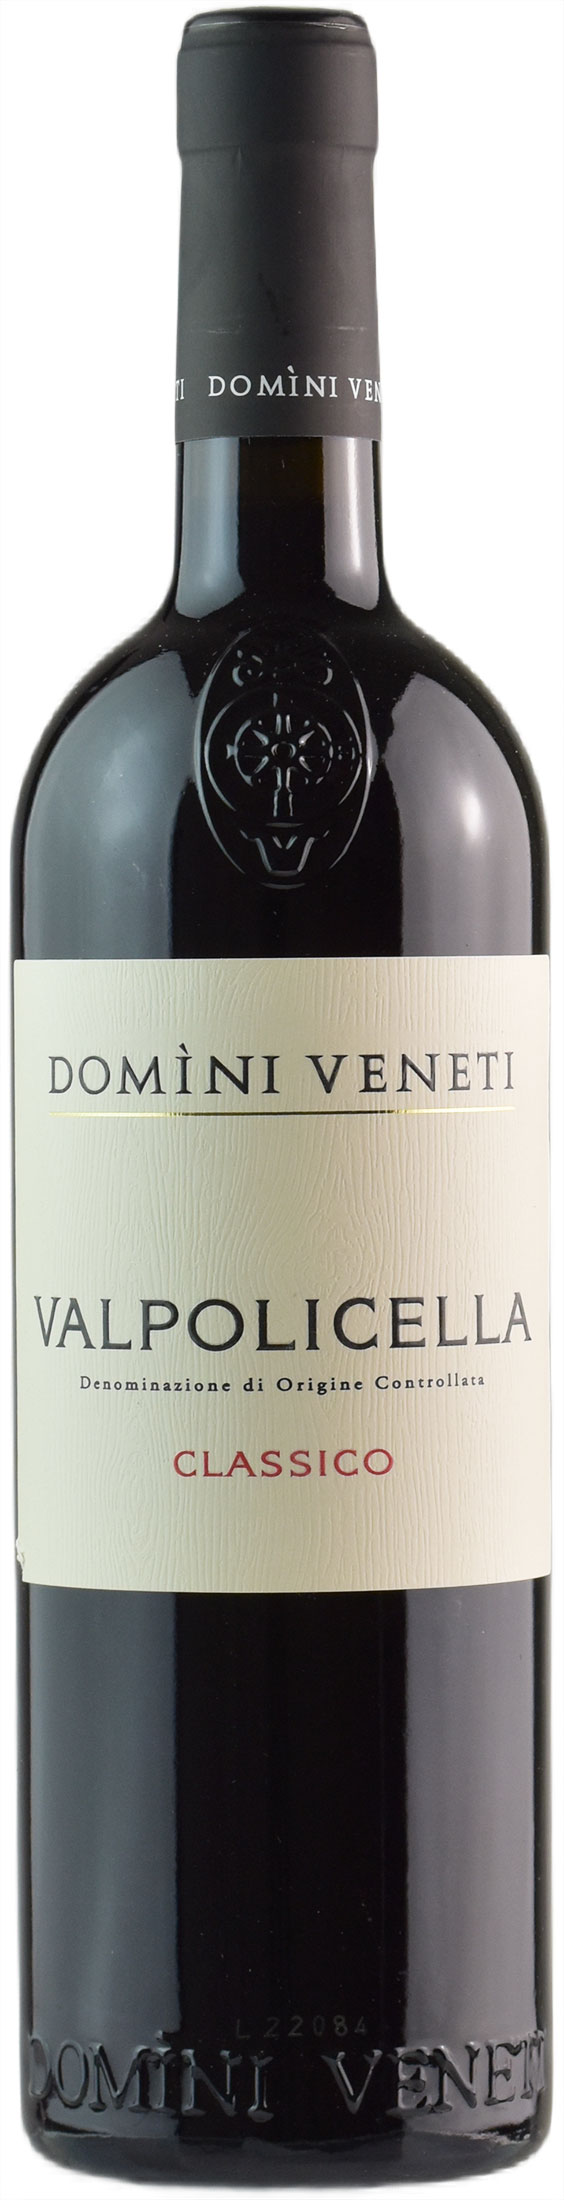 Domini Veneti Valpolicella Classico 2021